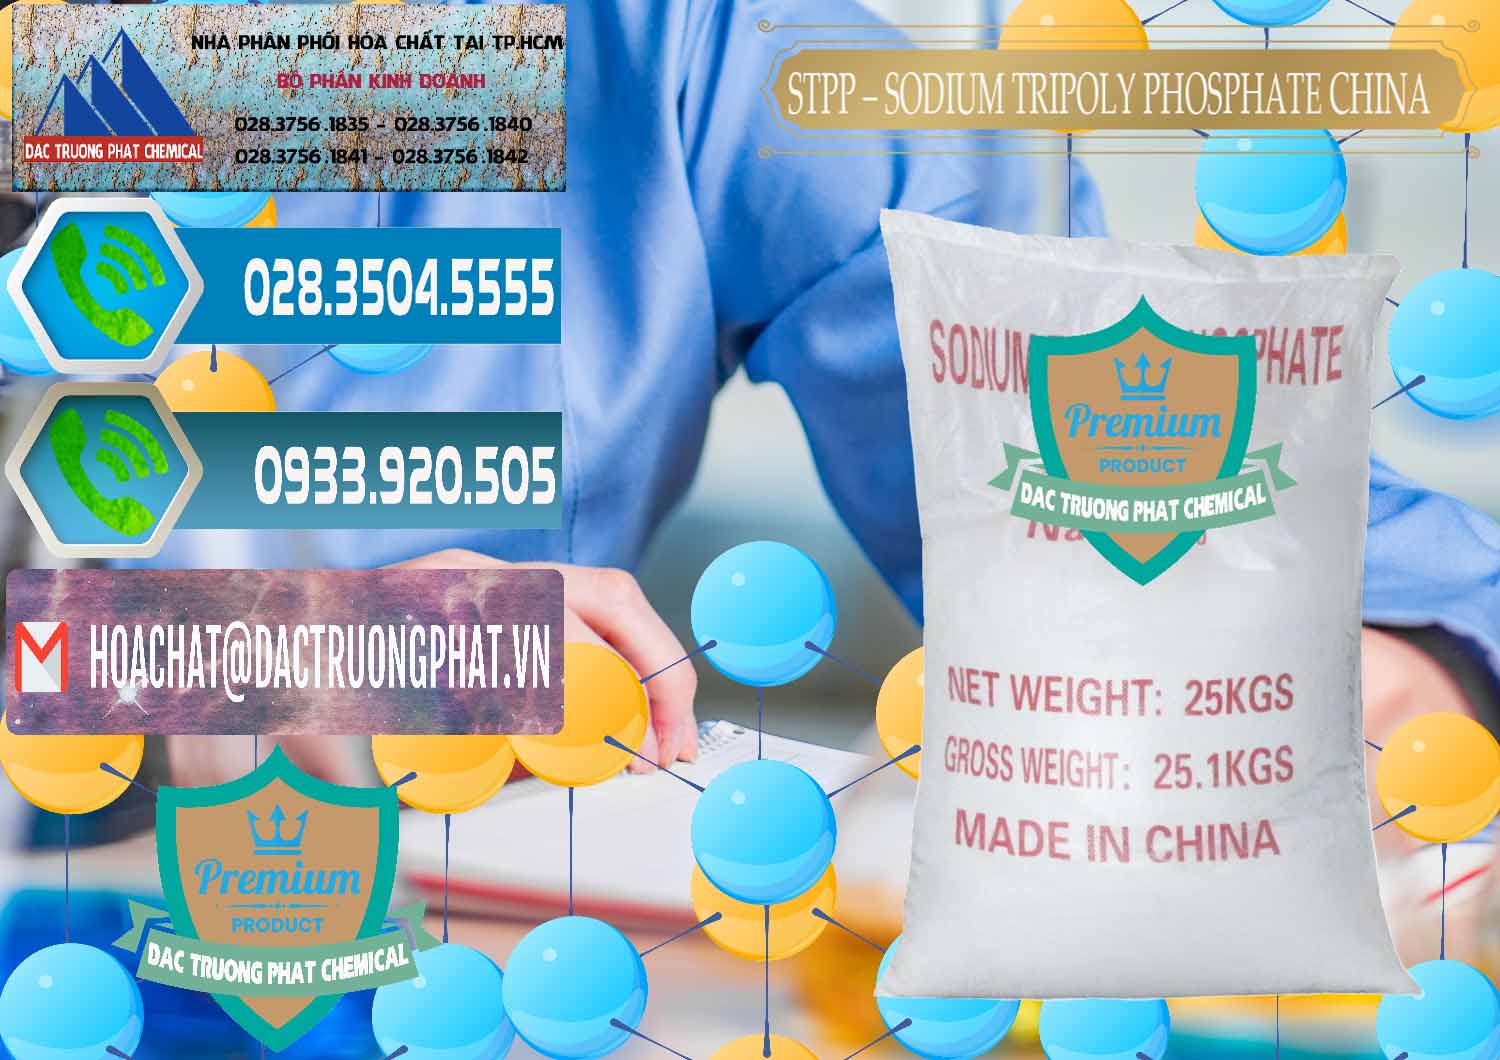 Nơi kinh doanh & bán Sodium Tripoly Phosphate - STPP 96% Chữ Đỏ Trung Quốc China - 0155 - Cty kinh doanh - phân phối hóa chất tại TP.HCM - congtyhoachat.net